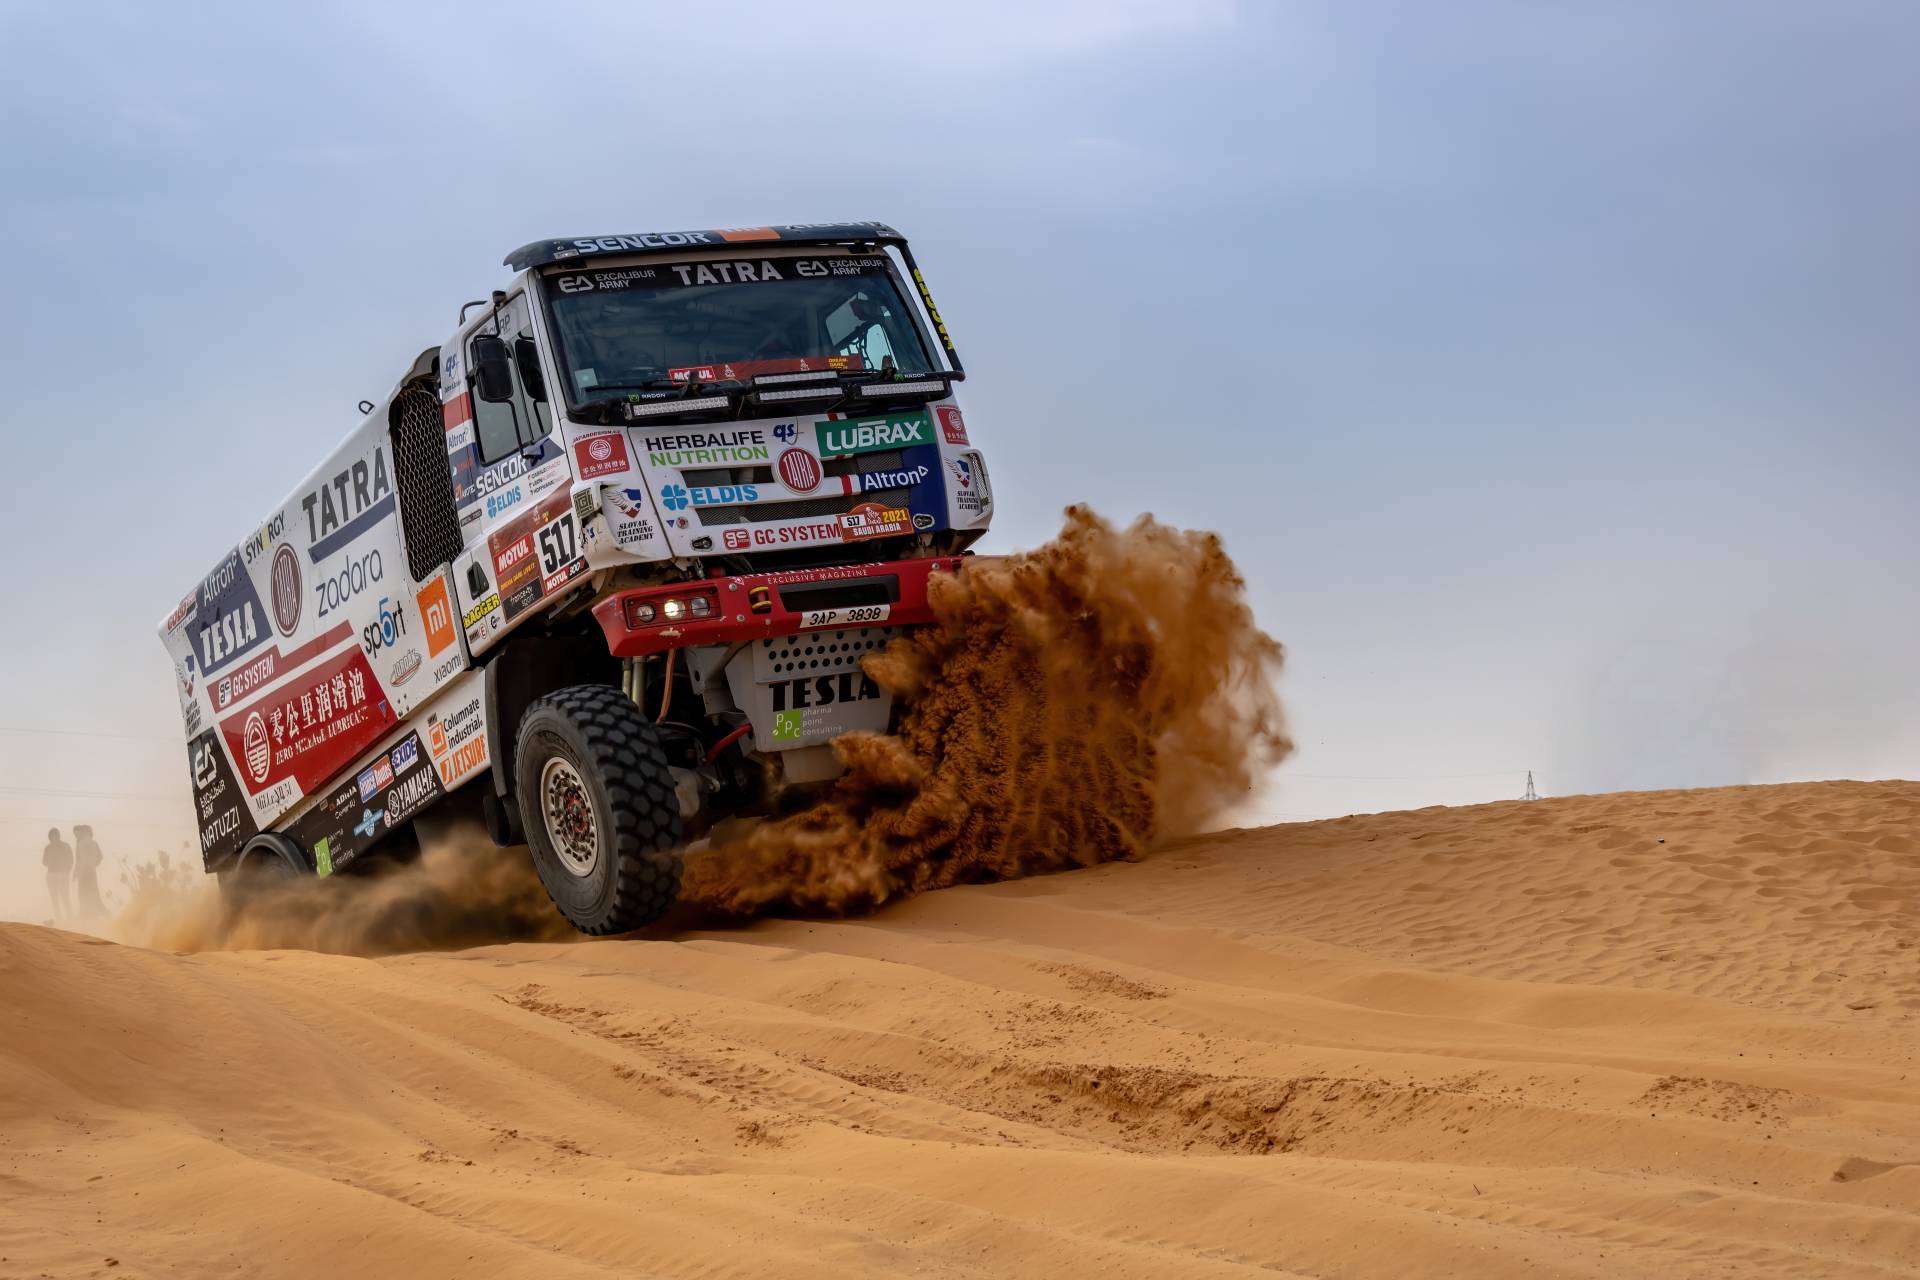 Vzestupy a pády Čechů na Rallye Dakar: Jak nám přálo štěstí v průběhu let?